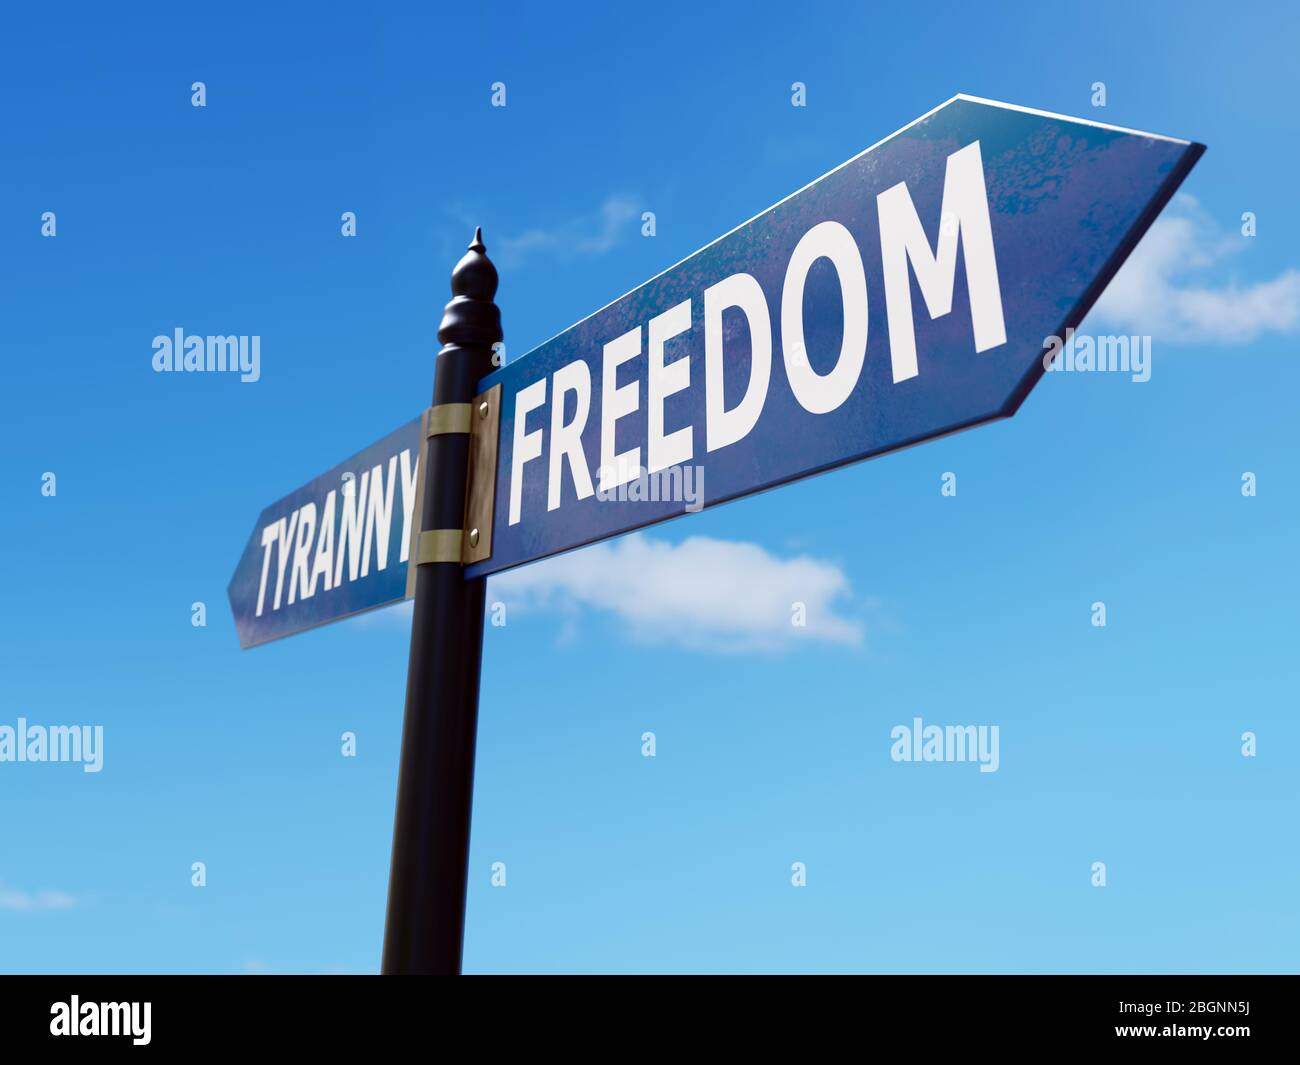 Panneau métallique bidirectionnel indiquant les directions de liberté et de tyrannie sur le ciel bleu Banque D'Images